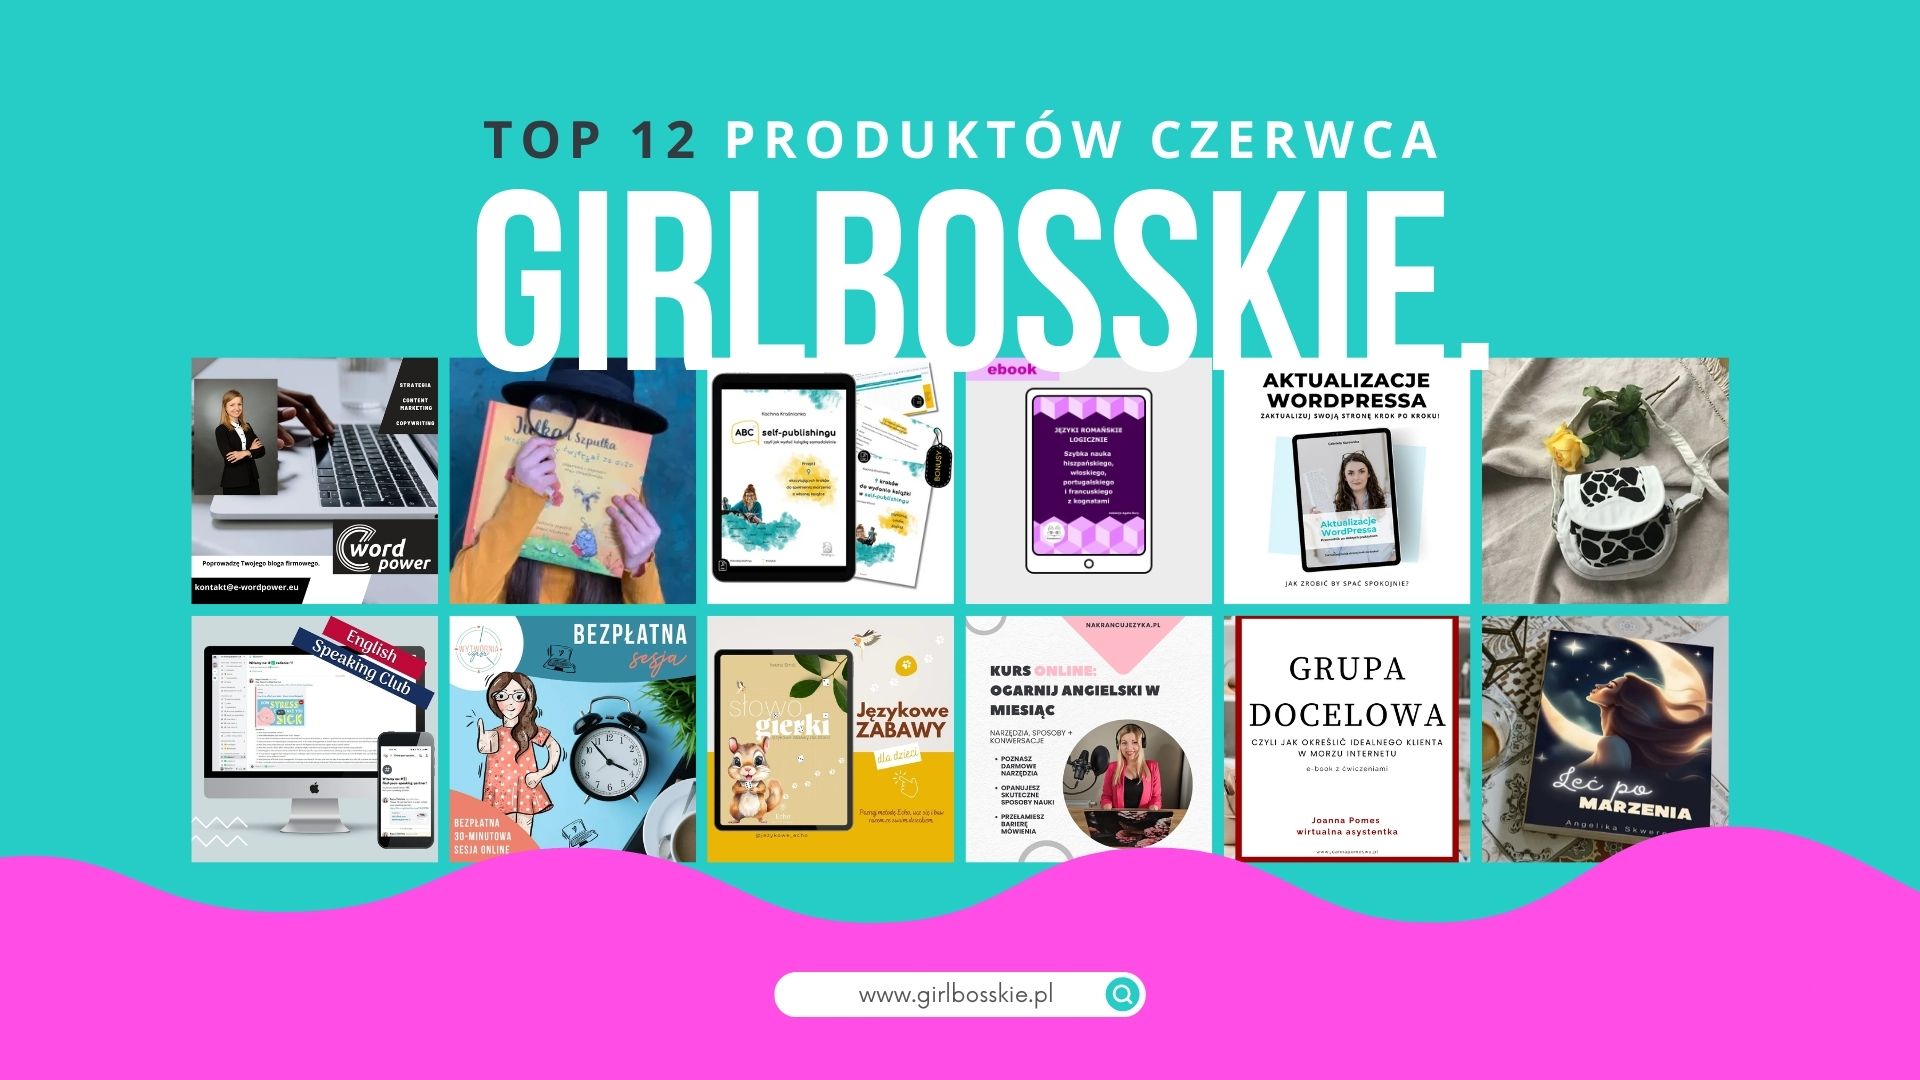 TOP12 Produktów Czerwca Portalu GIRLBOSSKIE